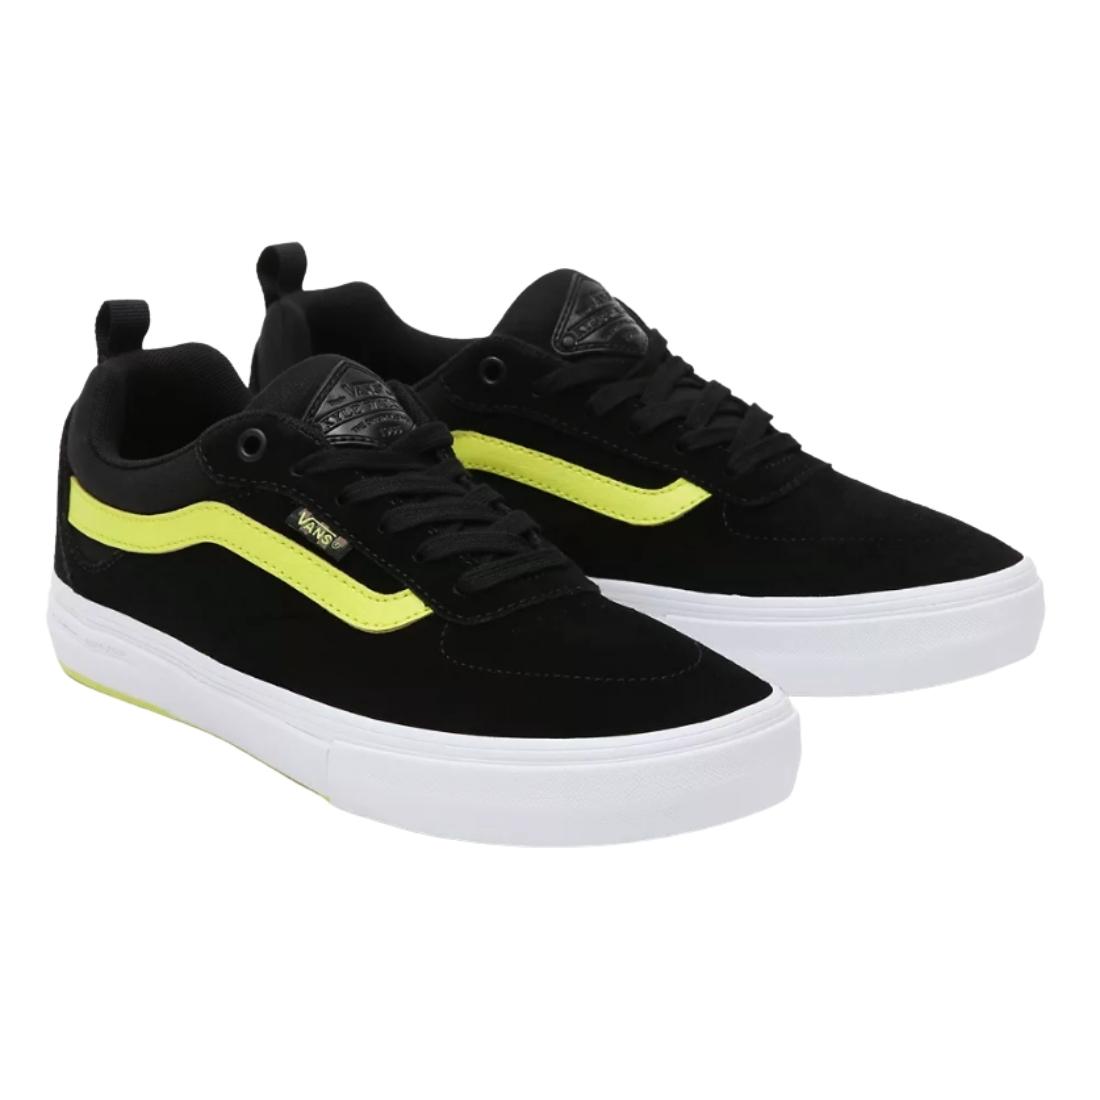 Vans Kyle Walker Pro Skate Shoes - Black/Sulphur